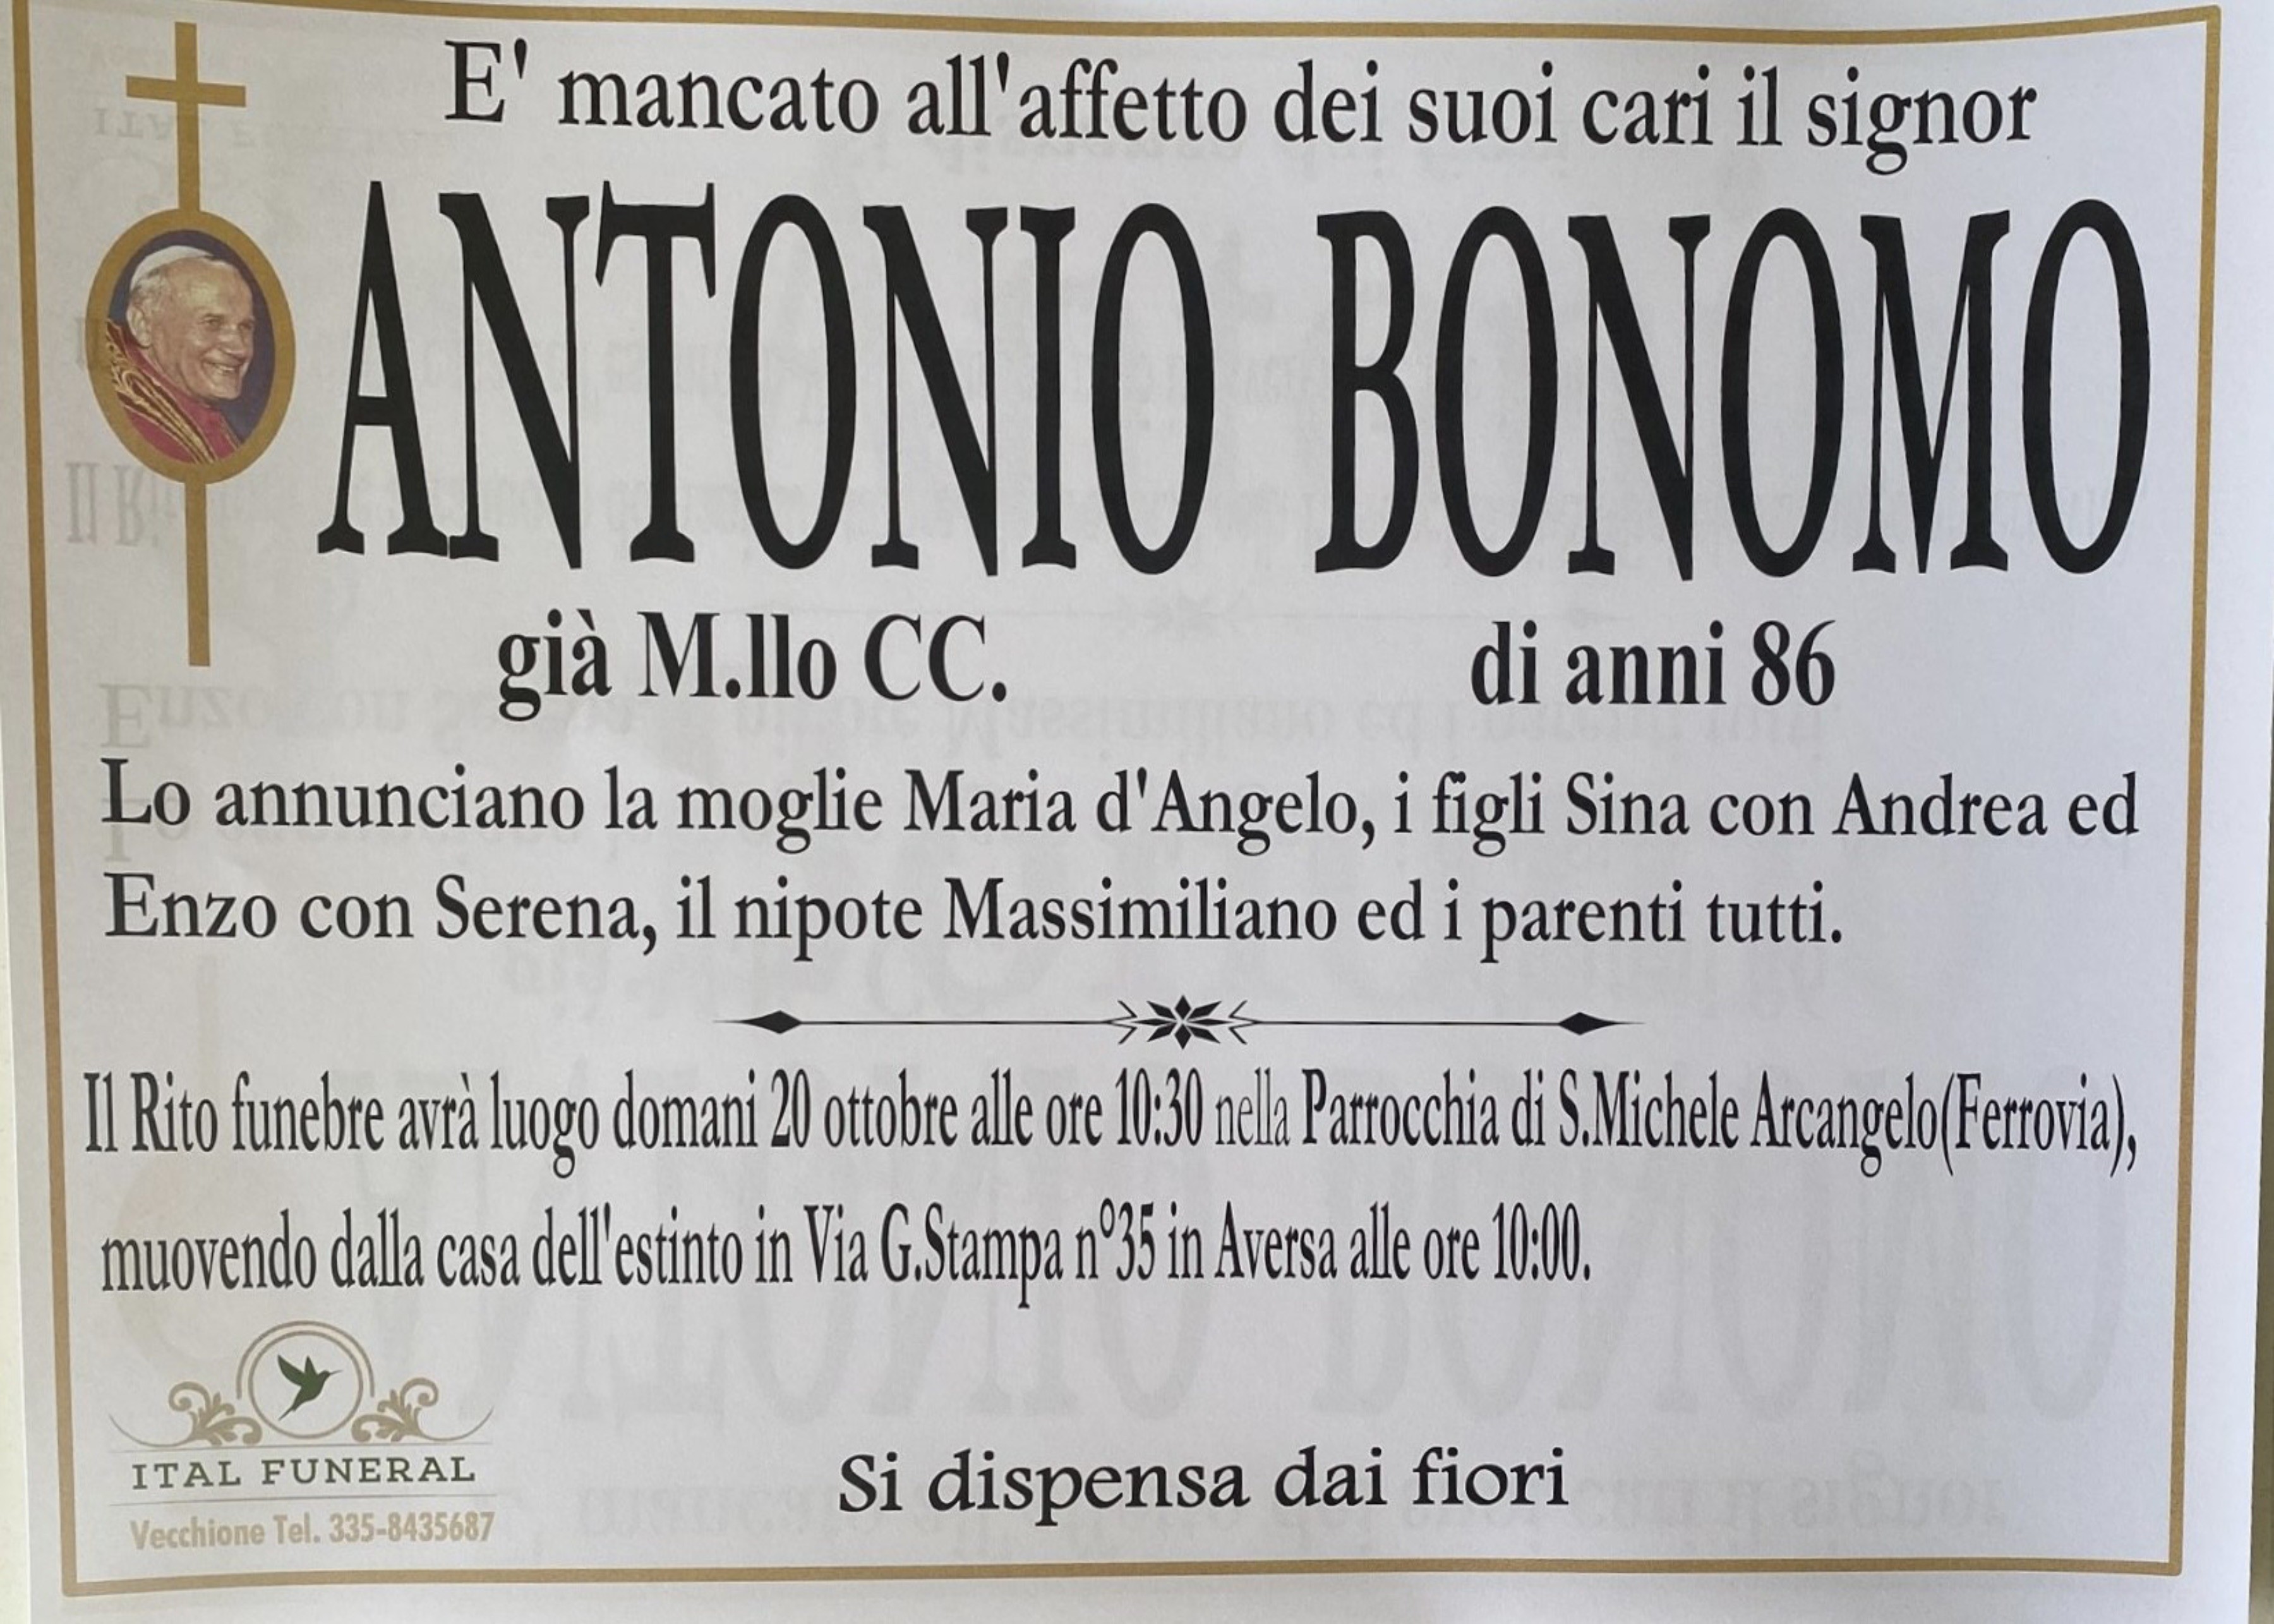 Già M. llo CC. Antonio Bonomo